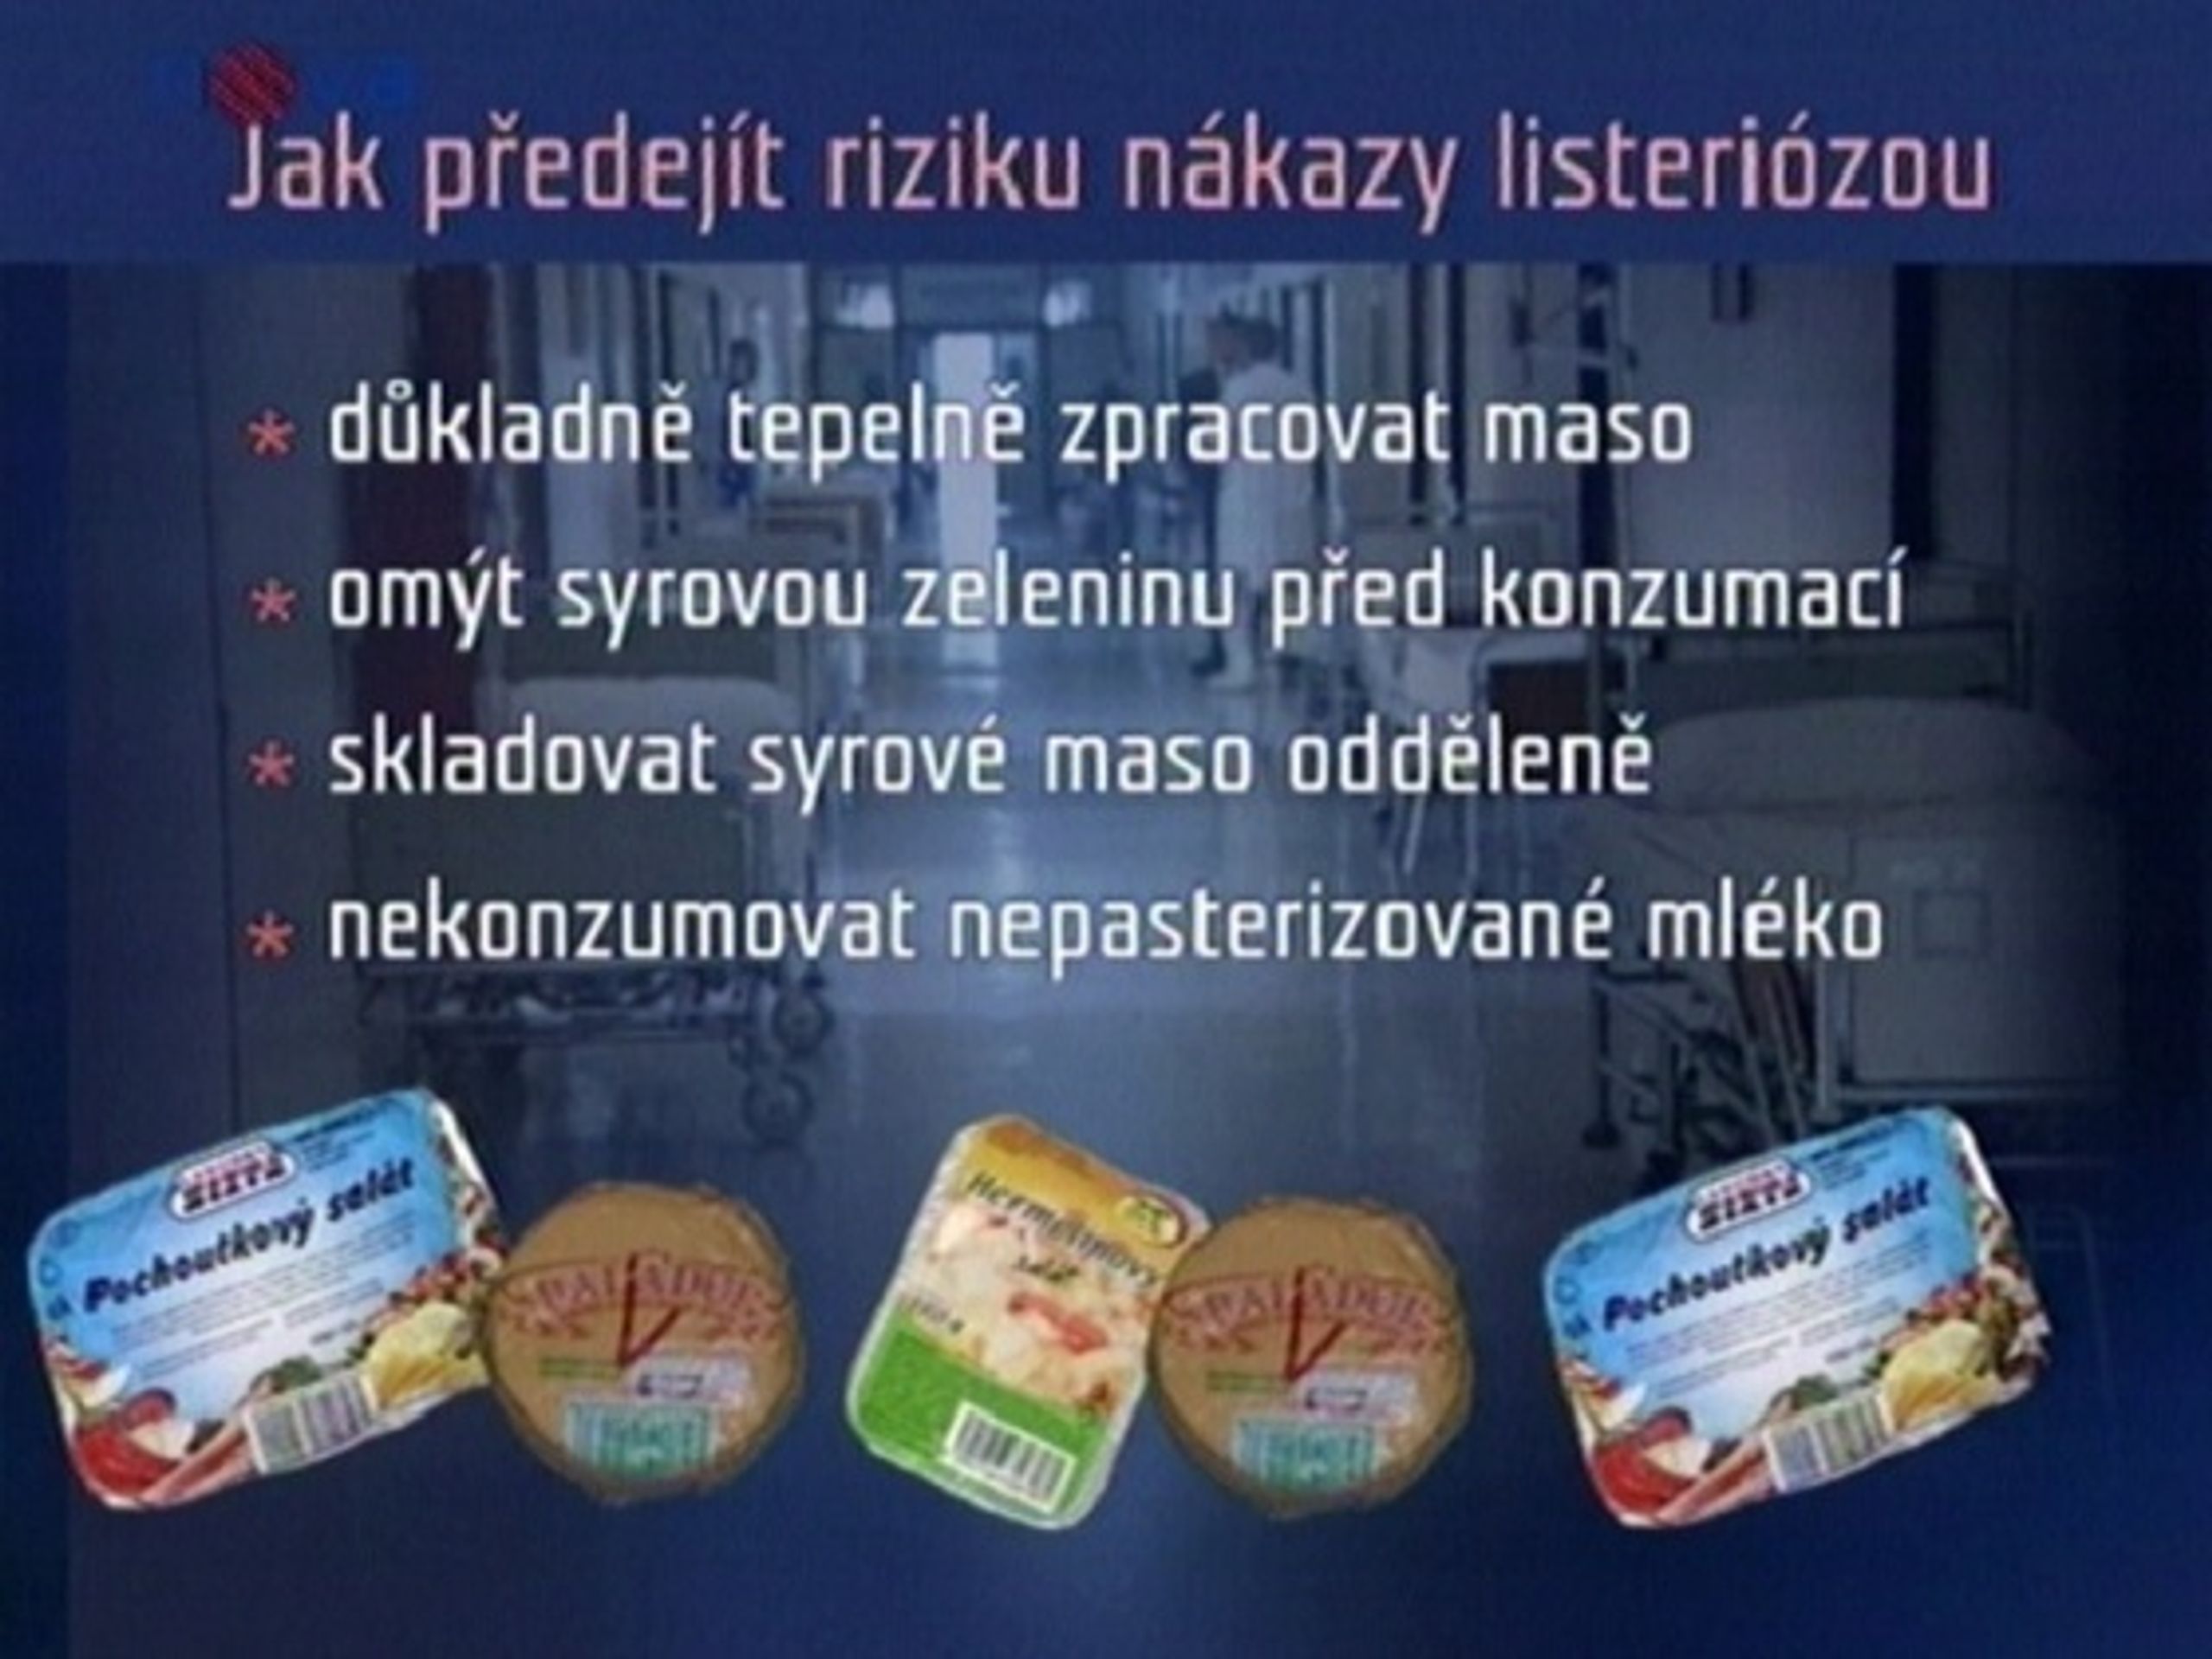 Jak předejít listerióze - ČR: Listerióza způsobila masivní kontroly potravin (2/3)